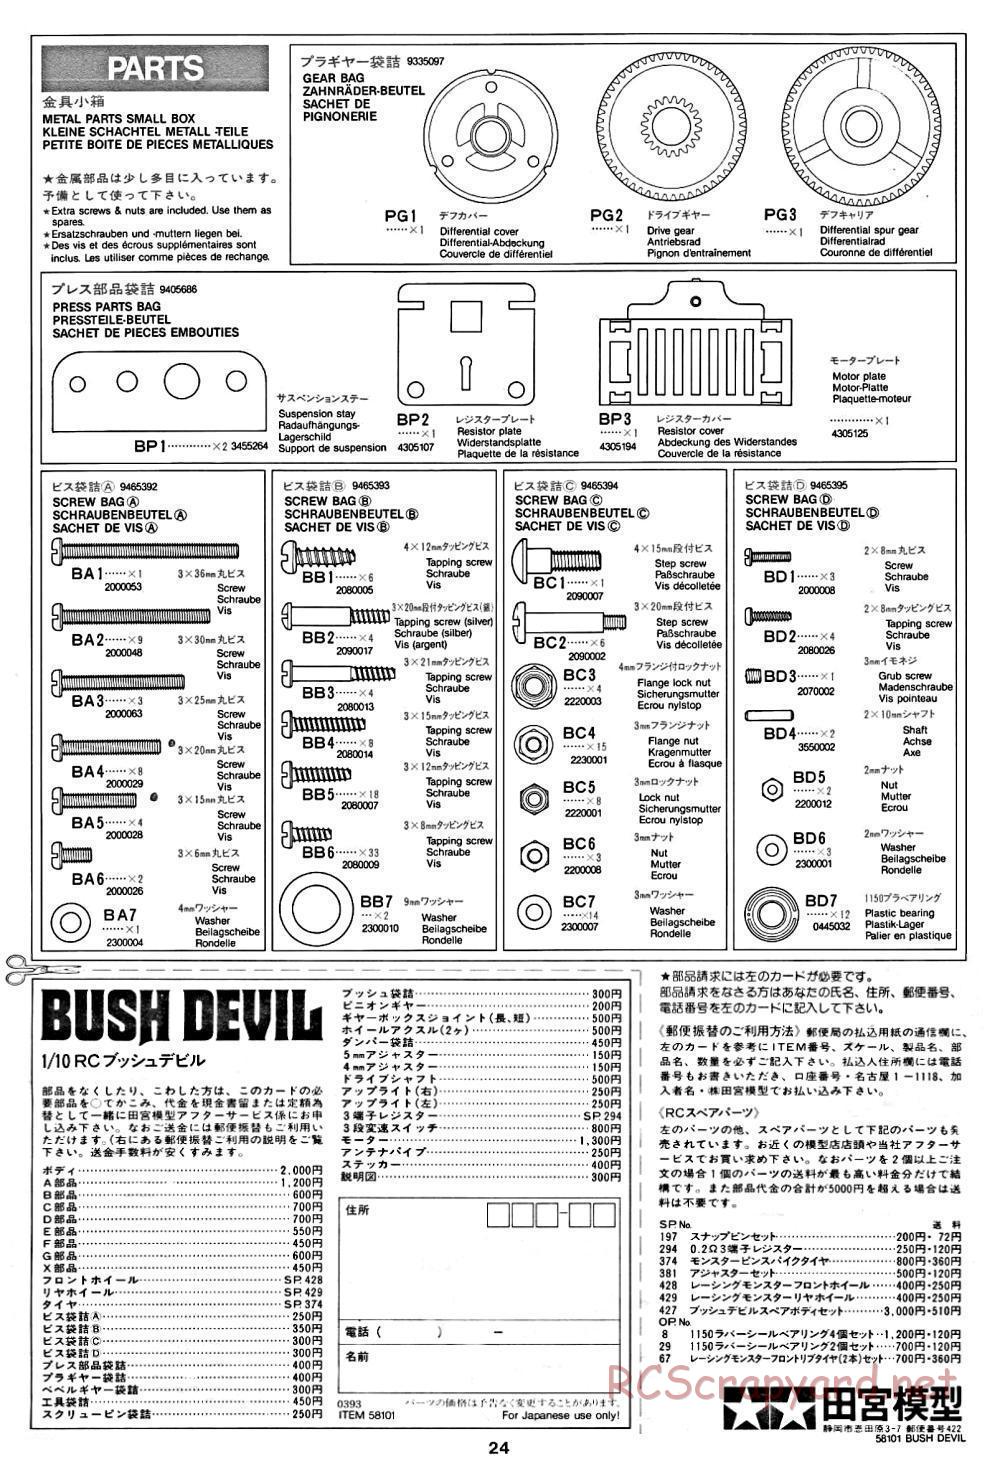 Tamiya - Bush Devil Chassis - Manual - Page 24